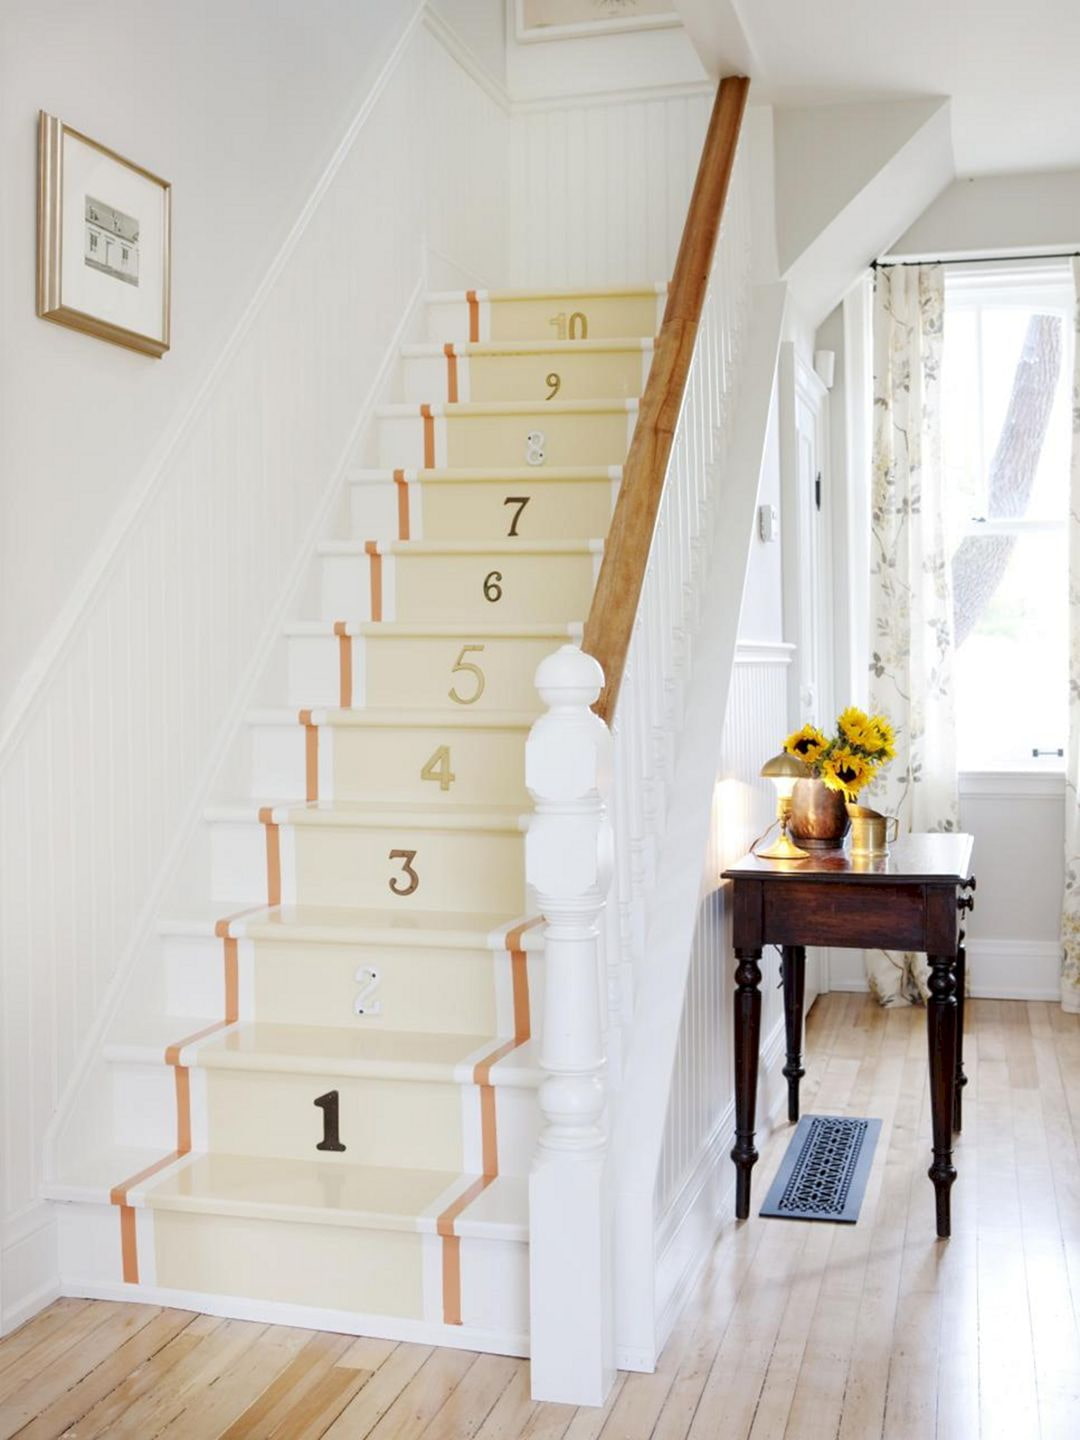 Escaliers raides avec degrés numérotés